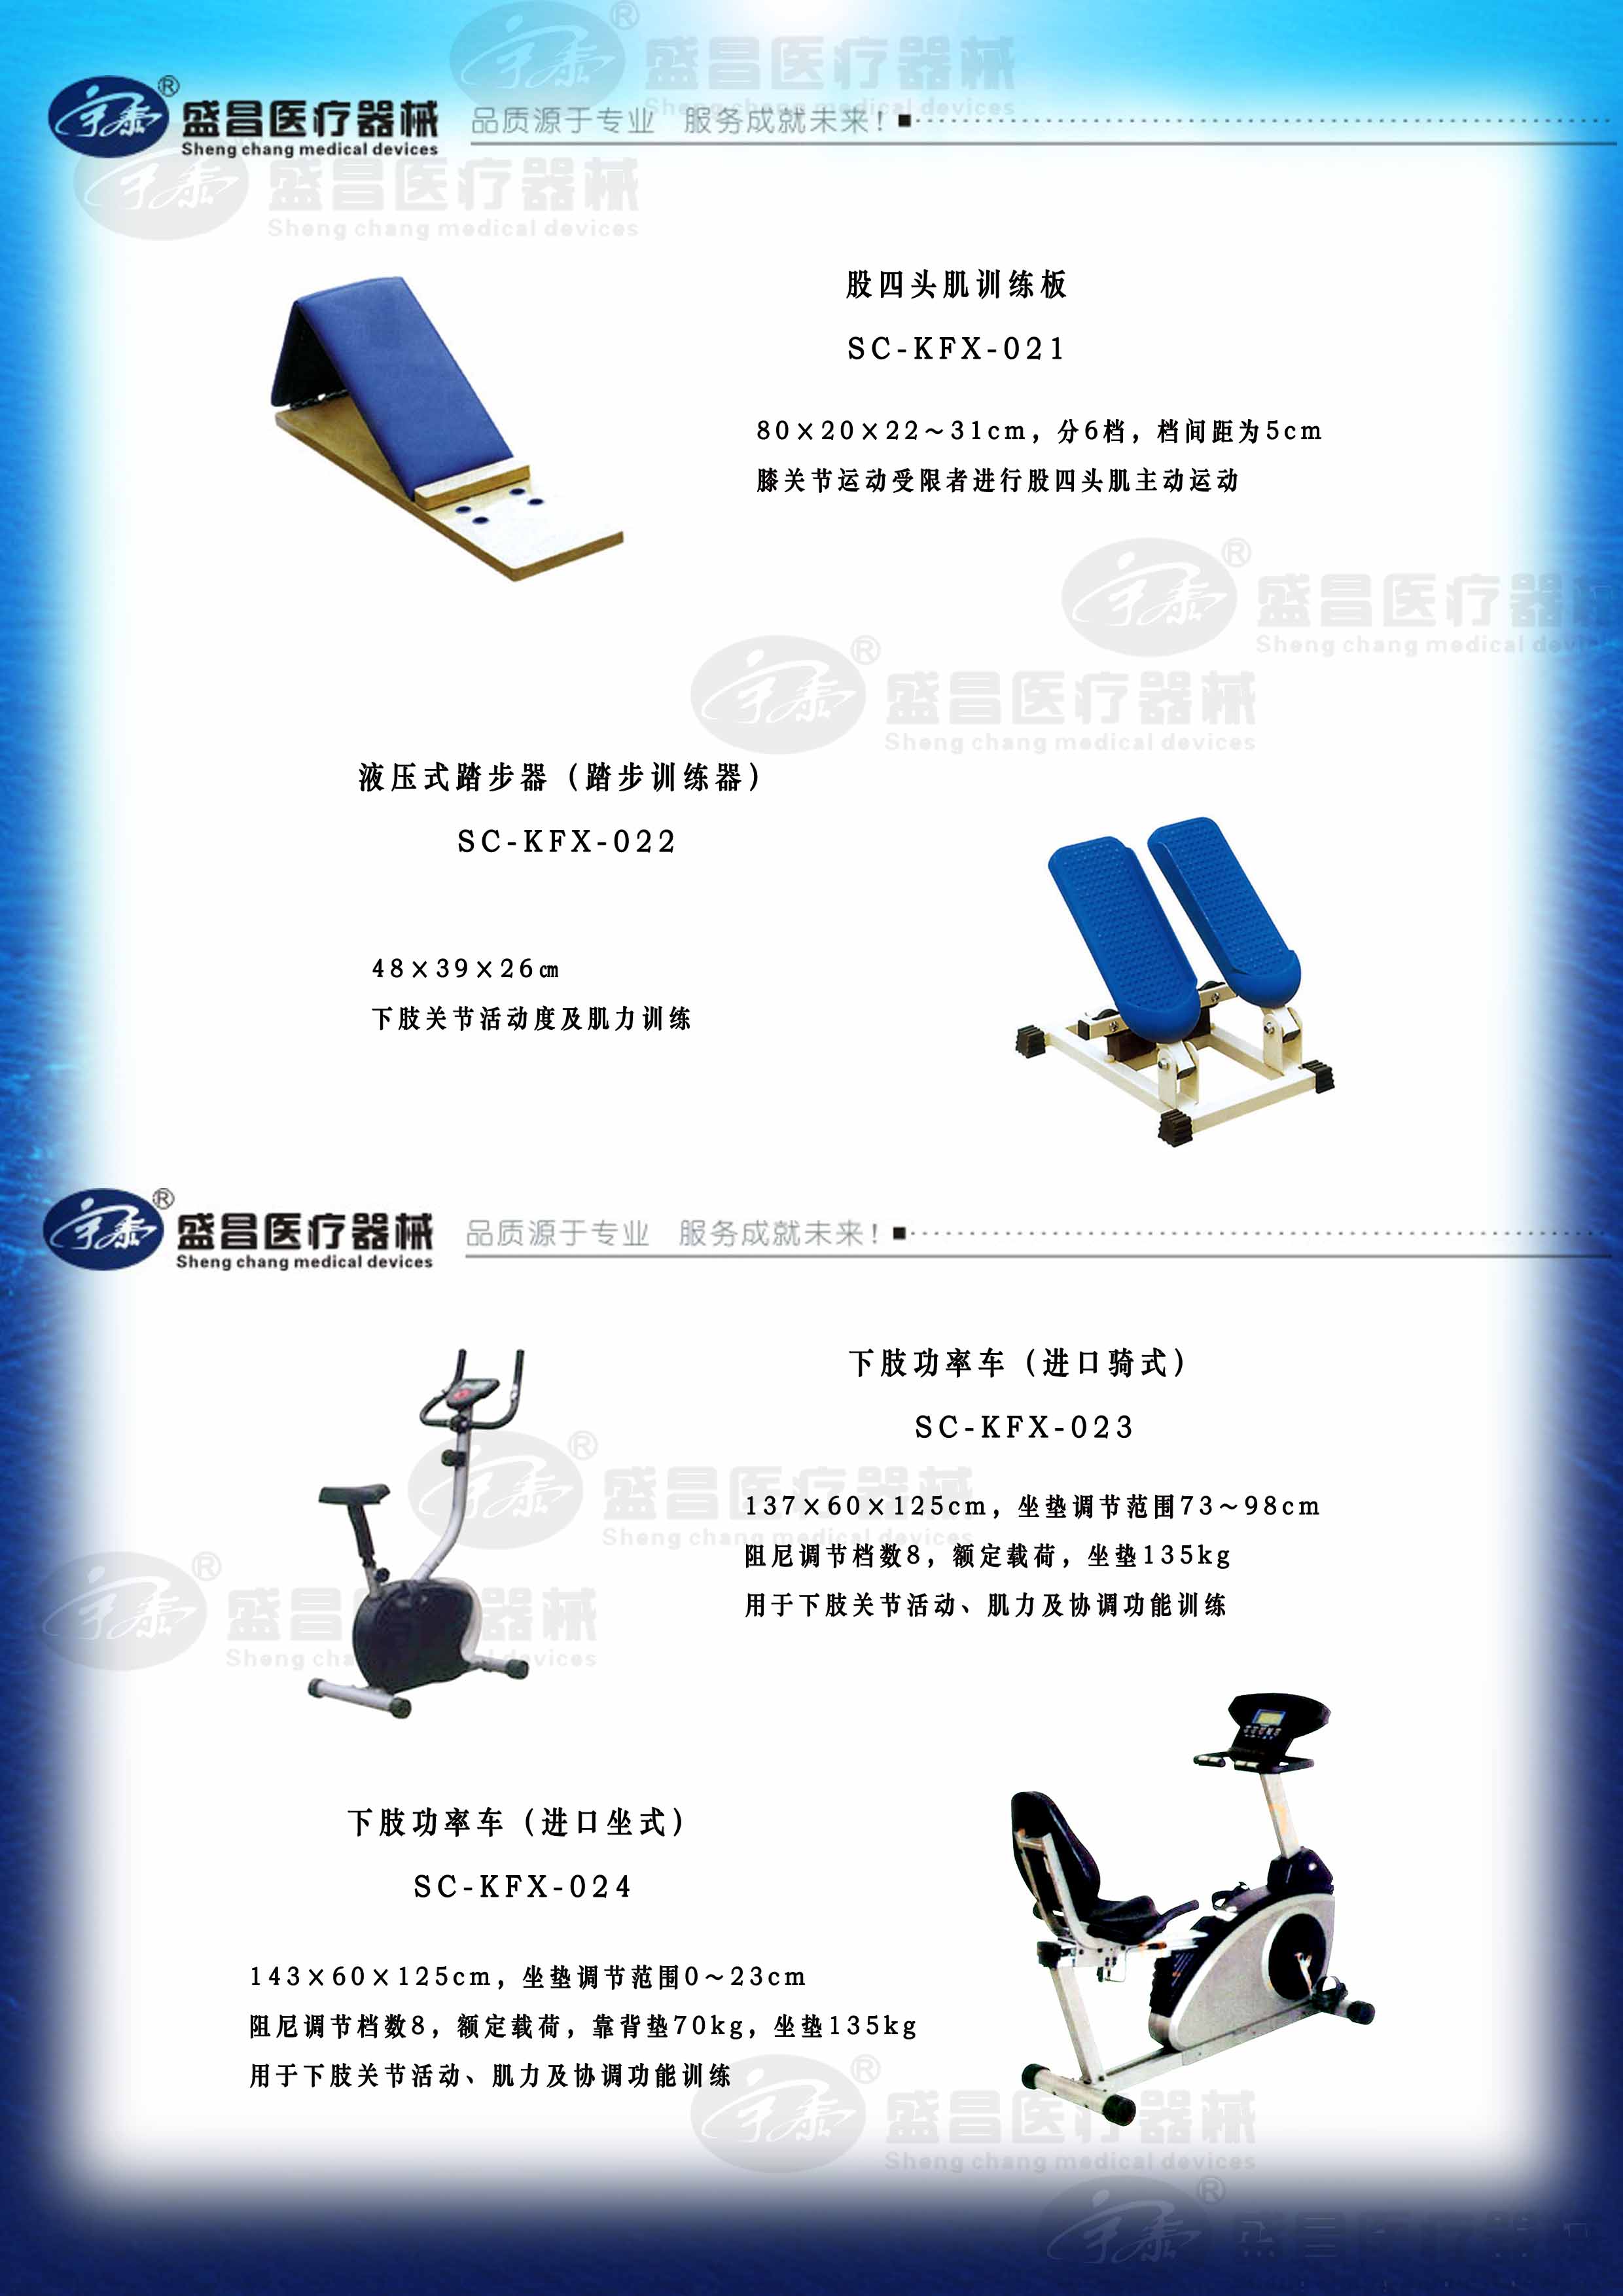 下肢功率车（进口骑式、坐式）；股四头肌训练板；液压式踏步器